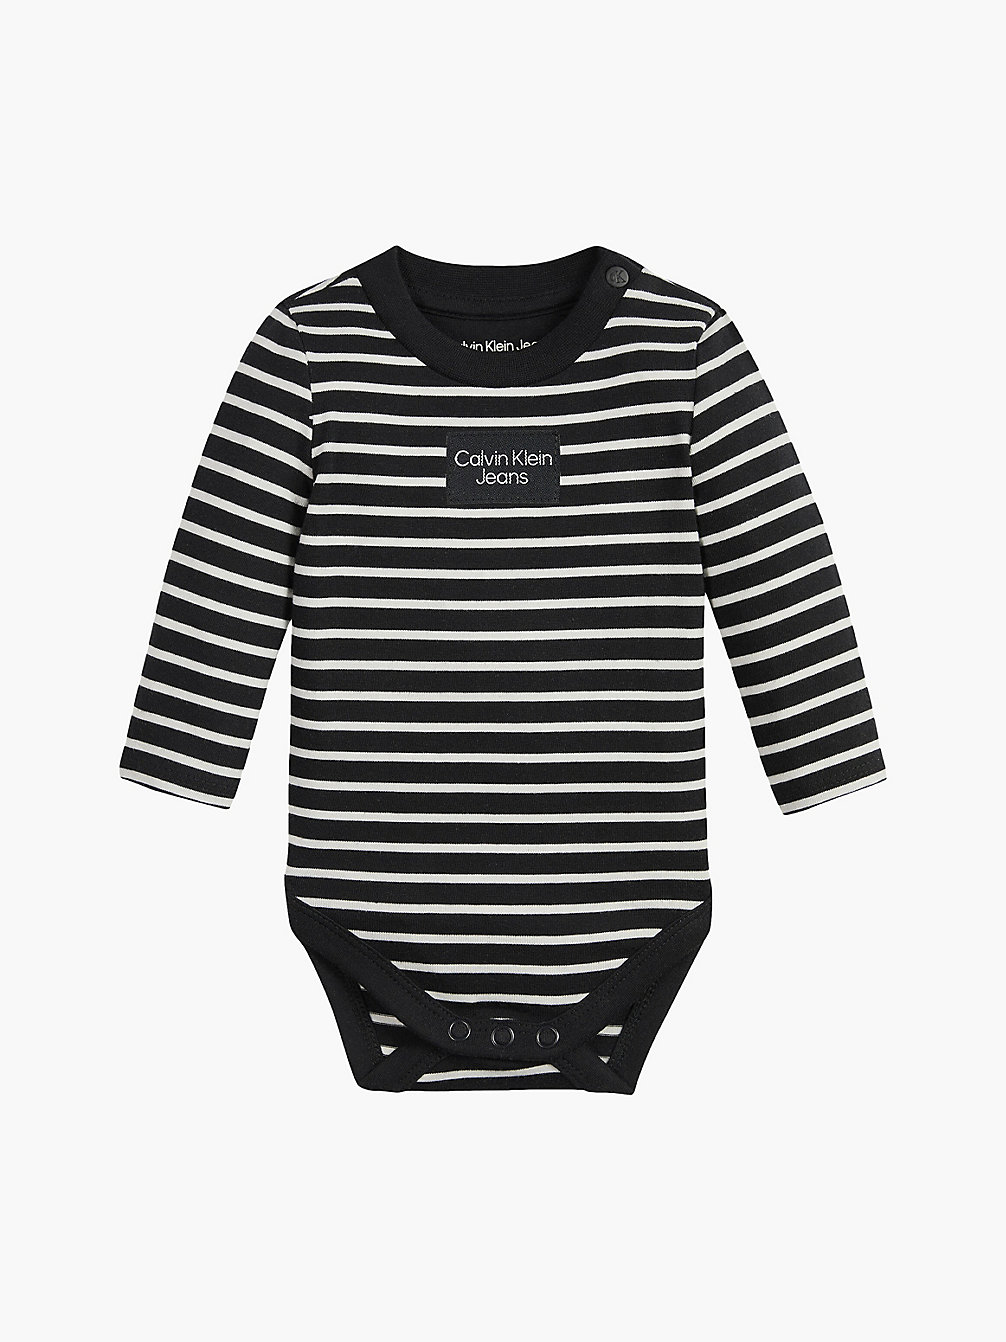 BLACK / IVORY STRIPE Newborn Striped Bodysuit undefined newborn Calvin Klein